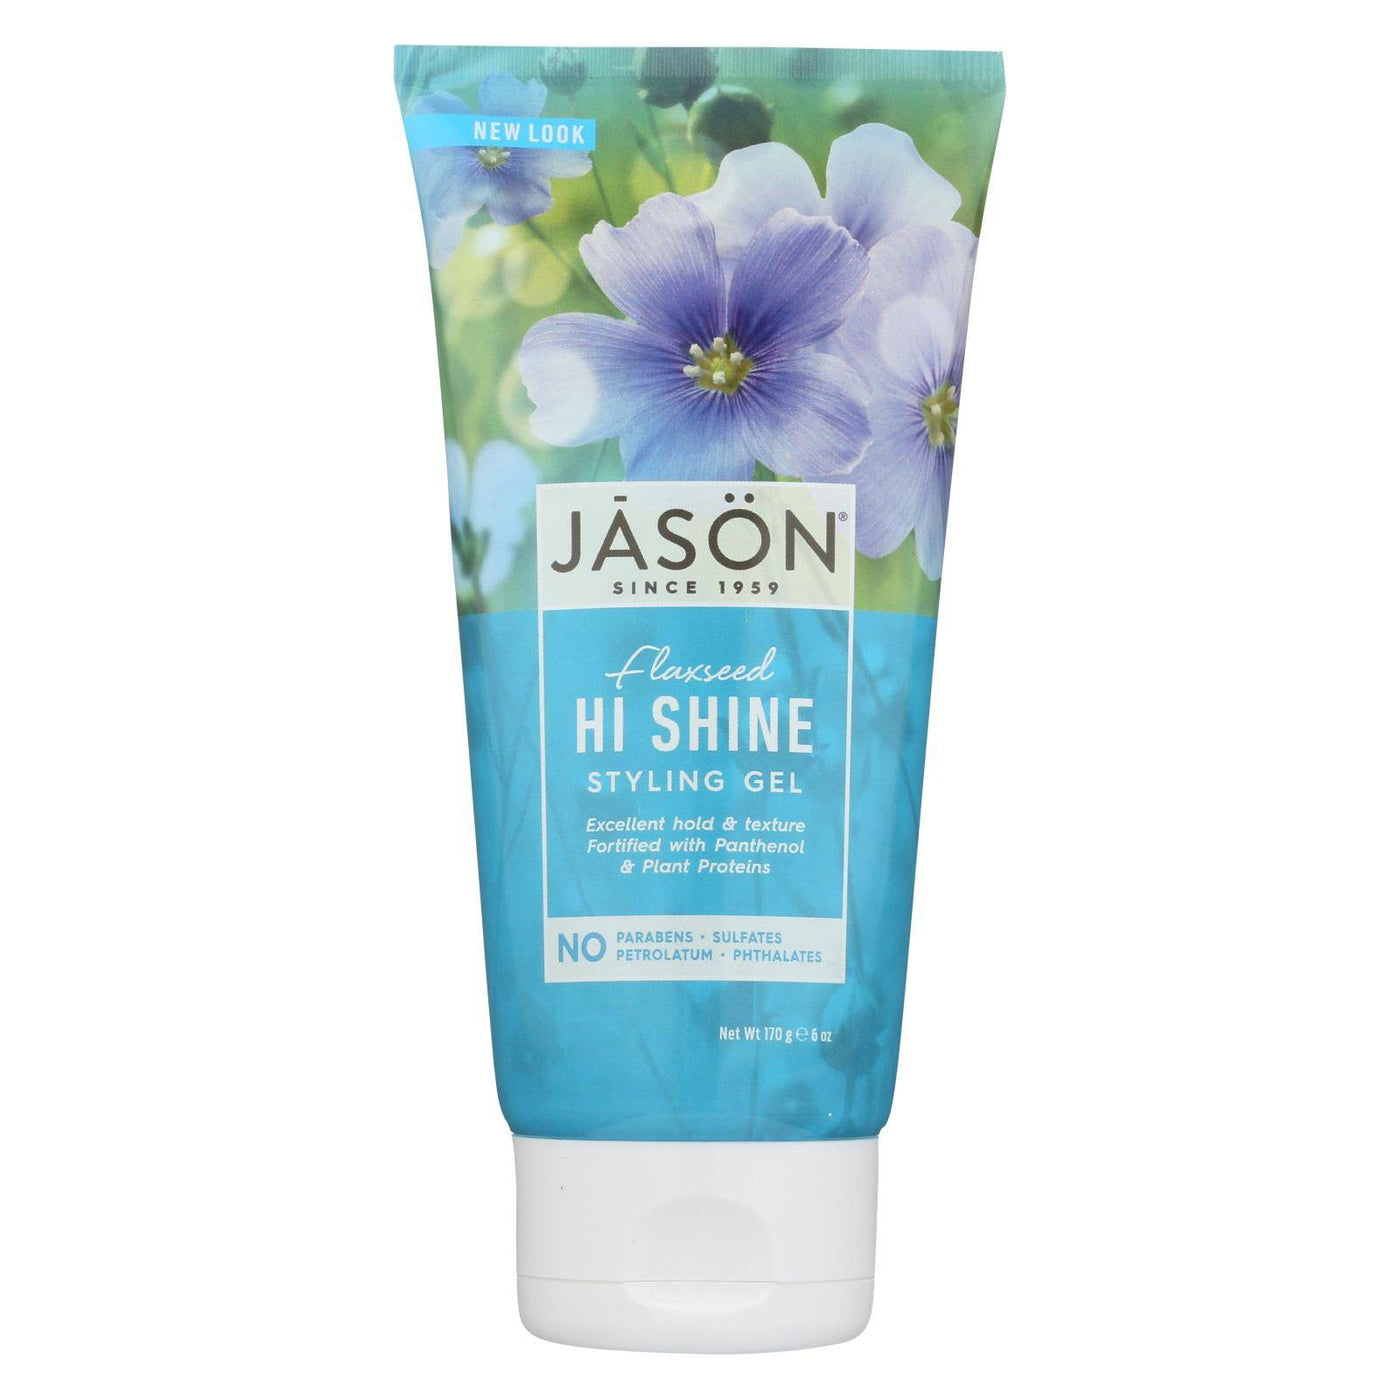 Buy Jason Styling Gel - Hi Shine - 6 Fl Oz  at OnlyNaturals.us